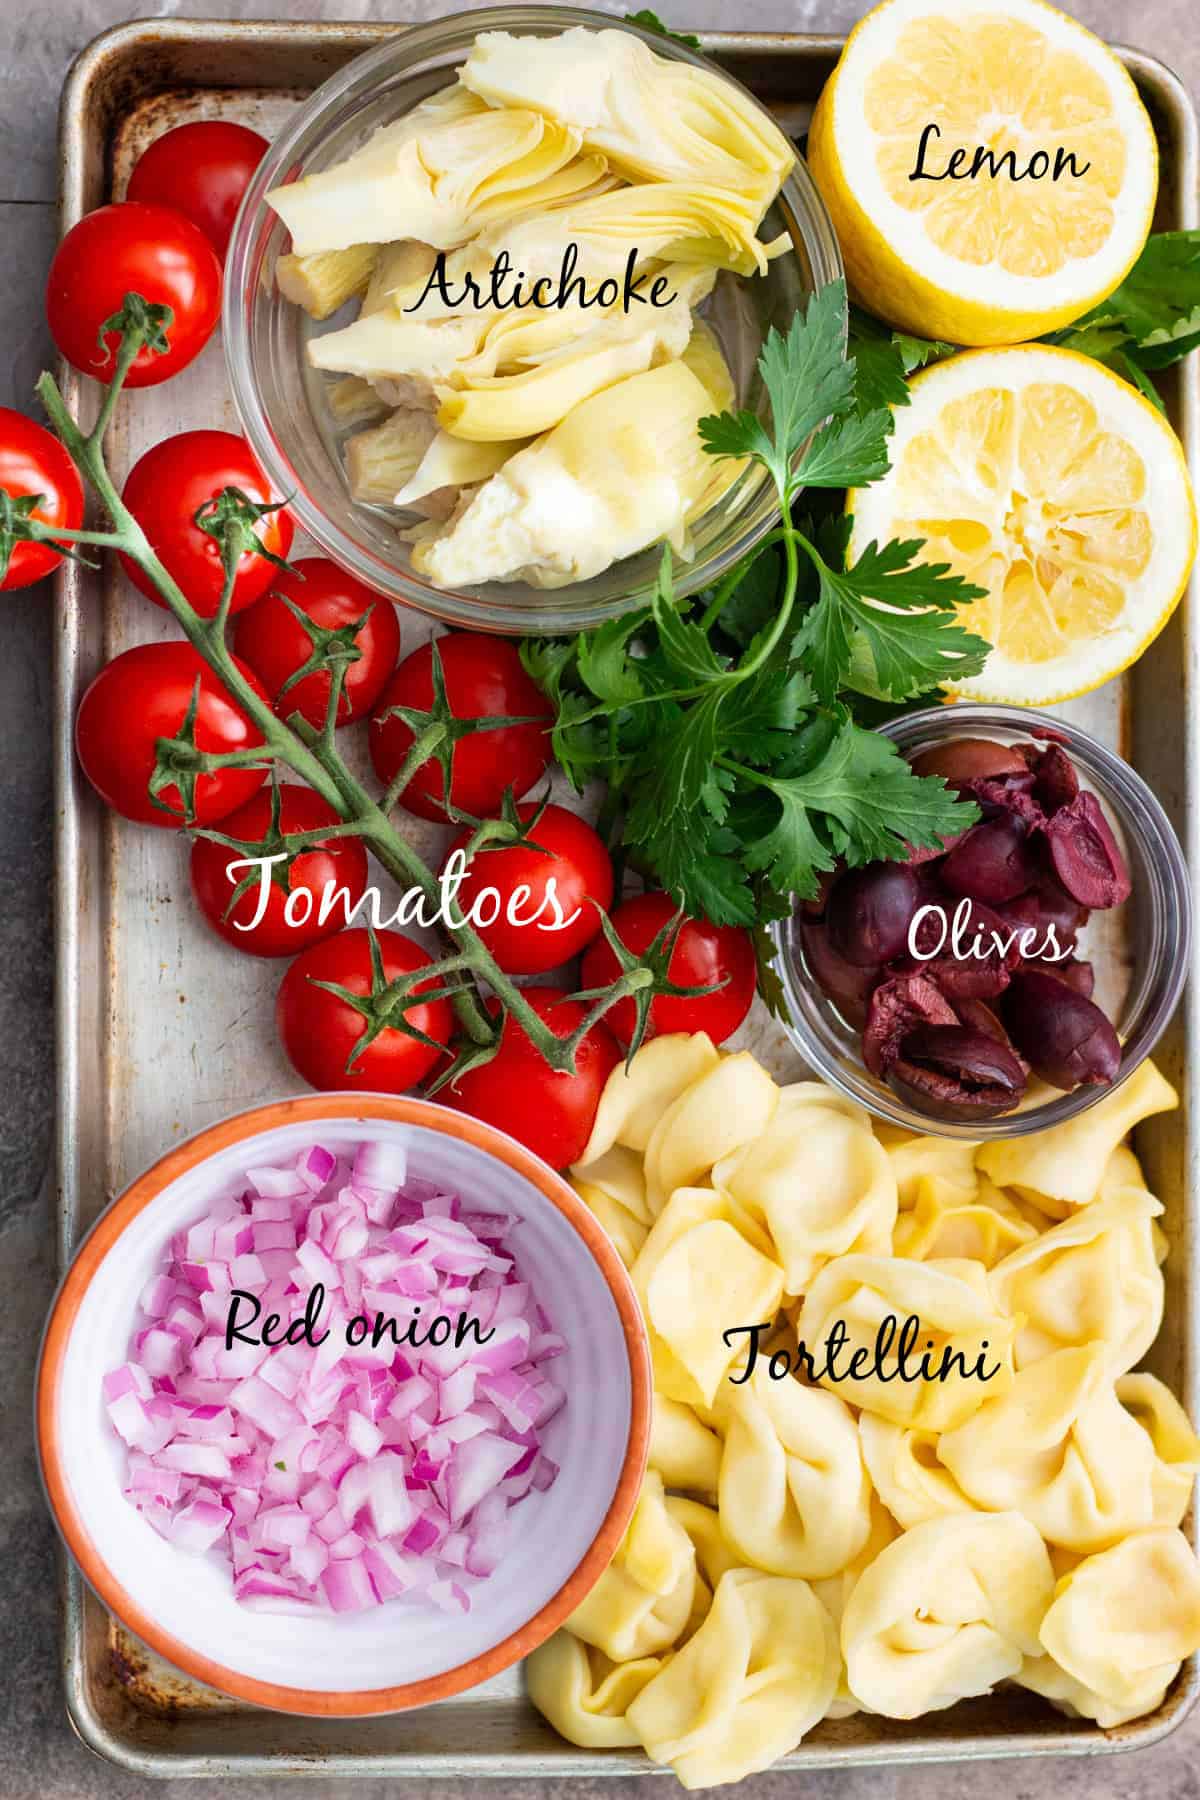 Ingredients to make Mediterranean tortellini salad. 